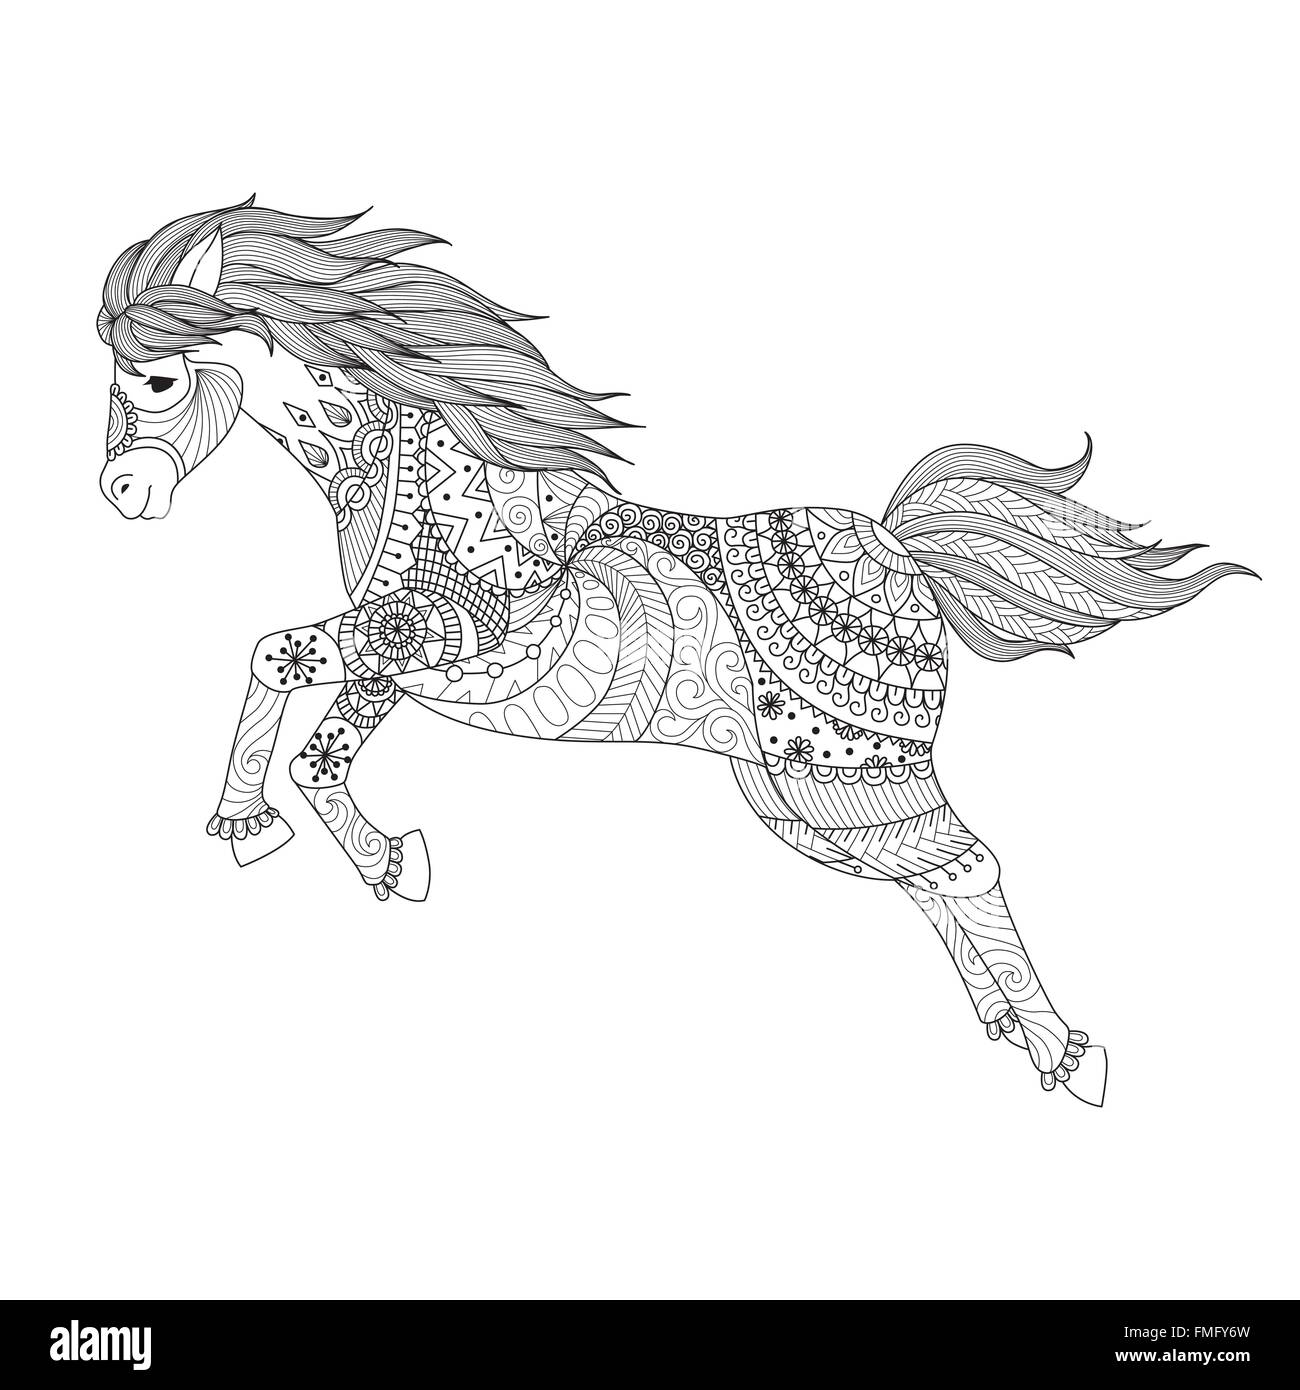 Disegno di cavallo salto zentangle lo stile per il libro da colorare per adulti,tattoo,logo,t shirt design, applicazione e altre decorazioni Illustrazione Vettoriale